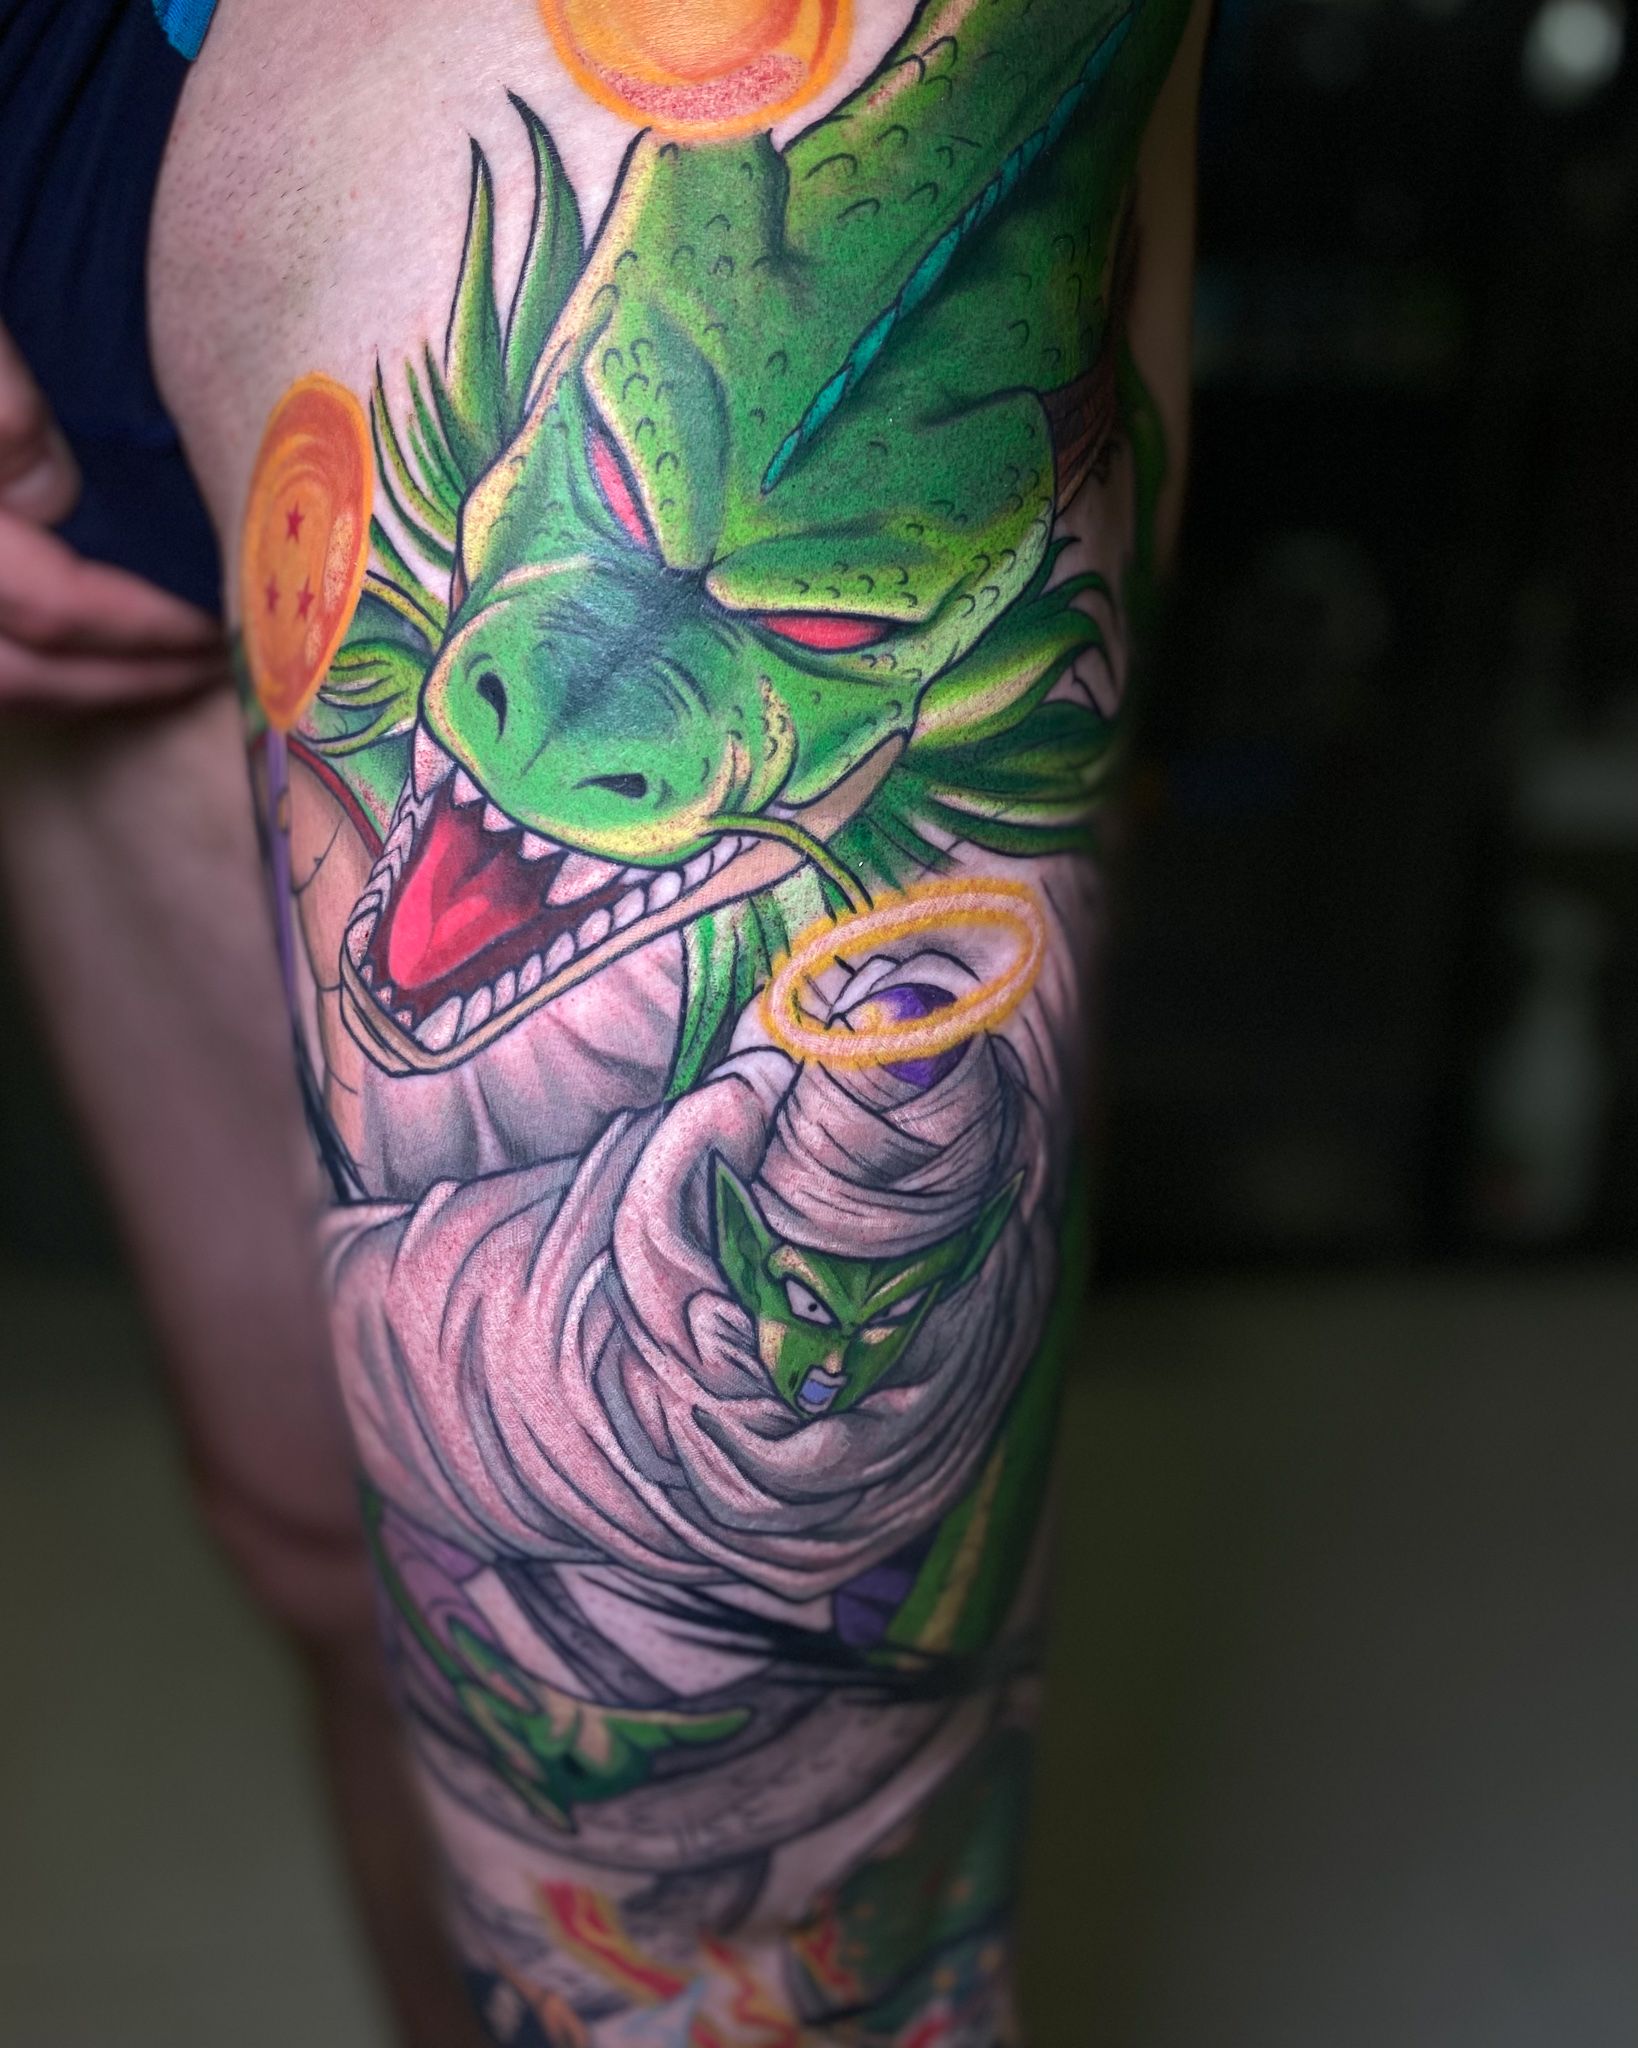 Dragon Ball tattoo done by © Sebastian Tattoo. : r/nerdtattoos